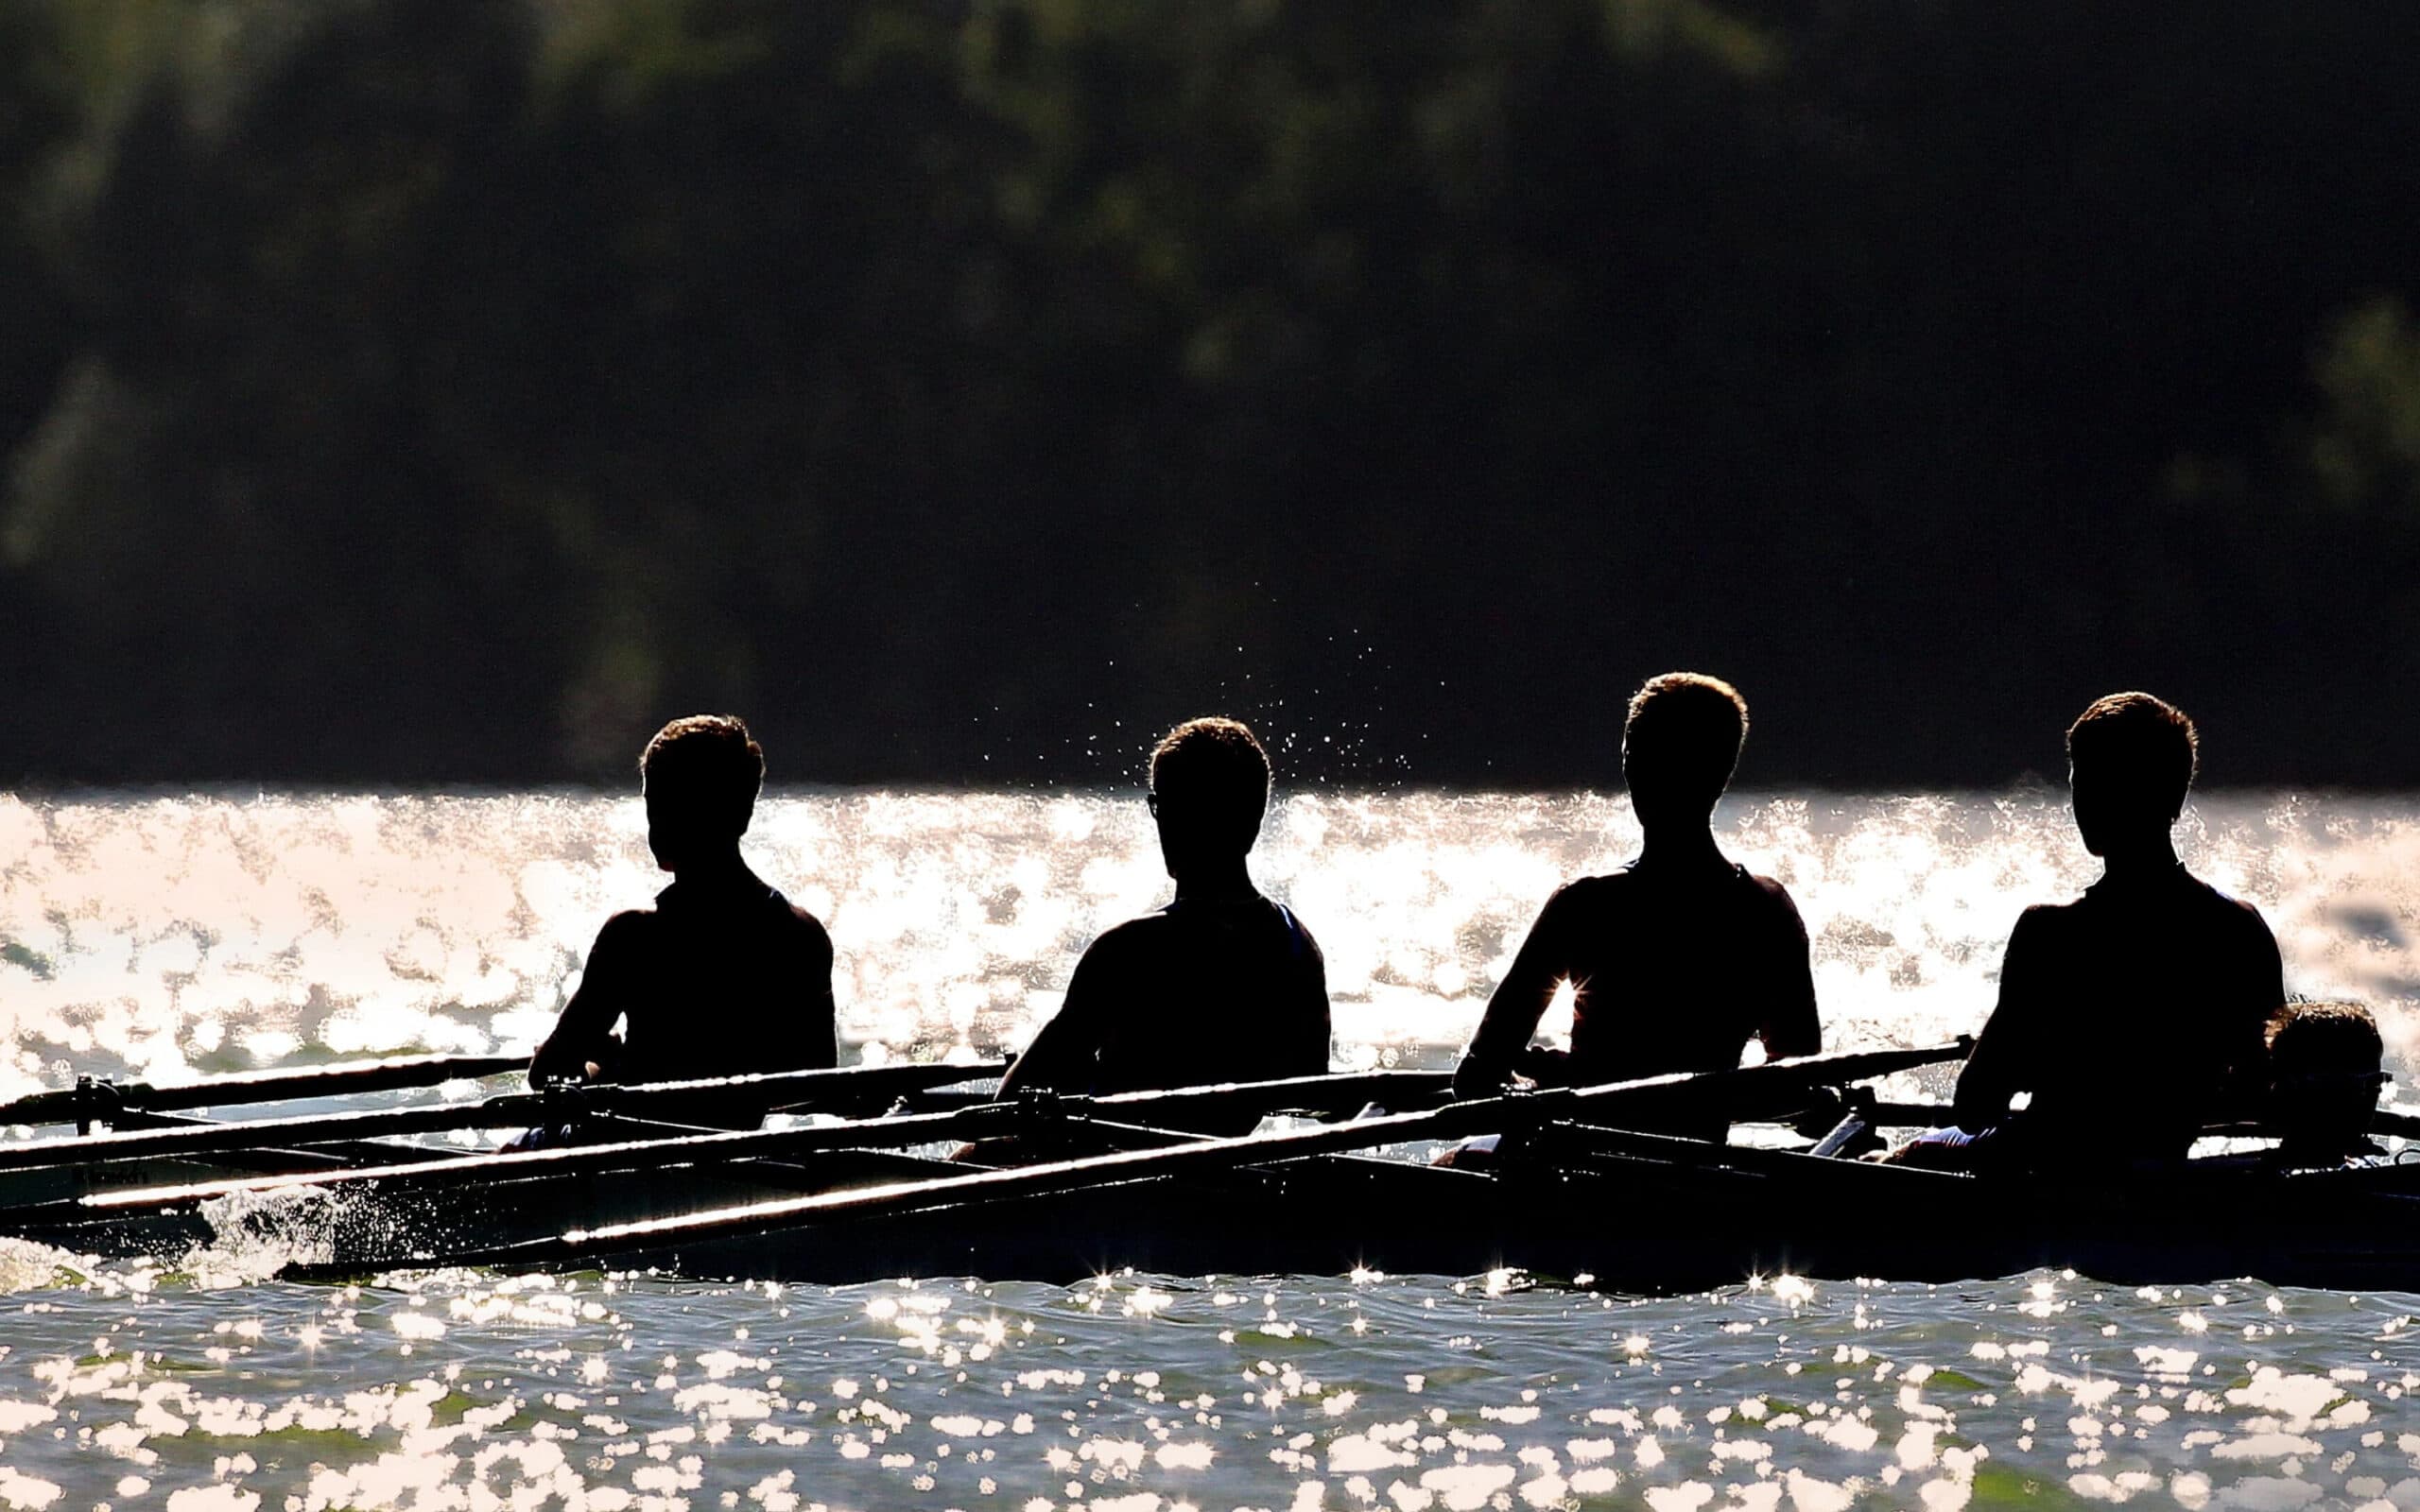 Men rowing in row boat race